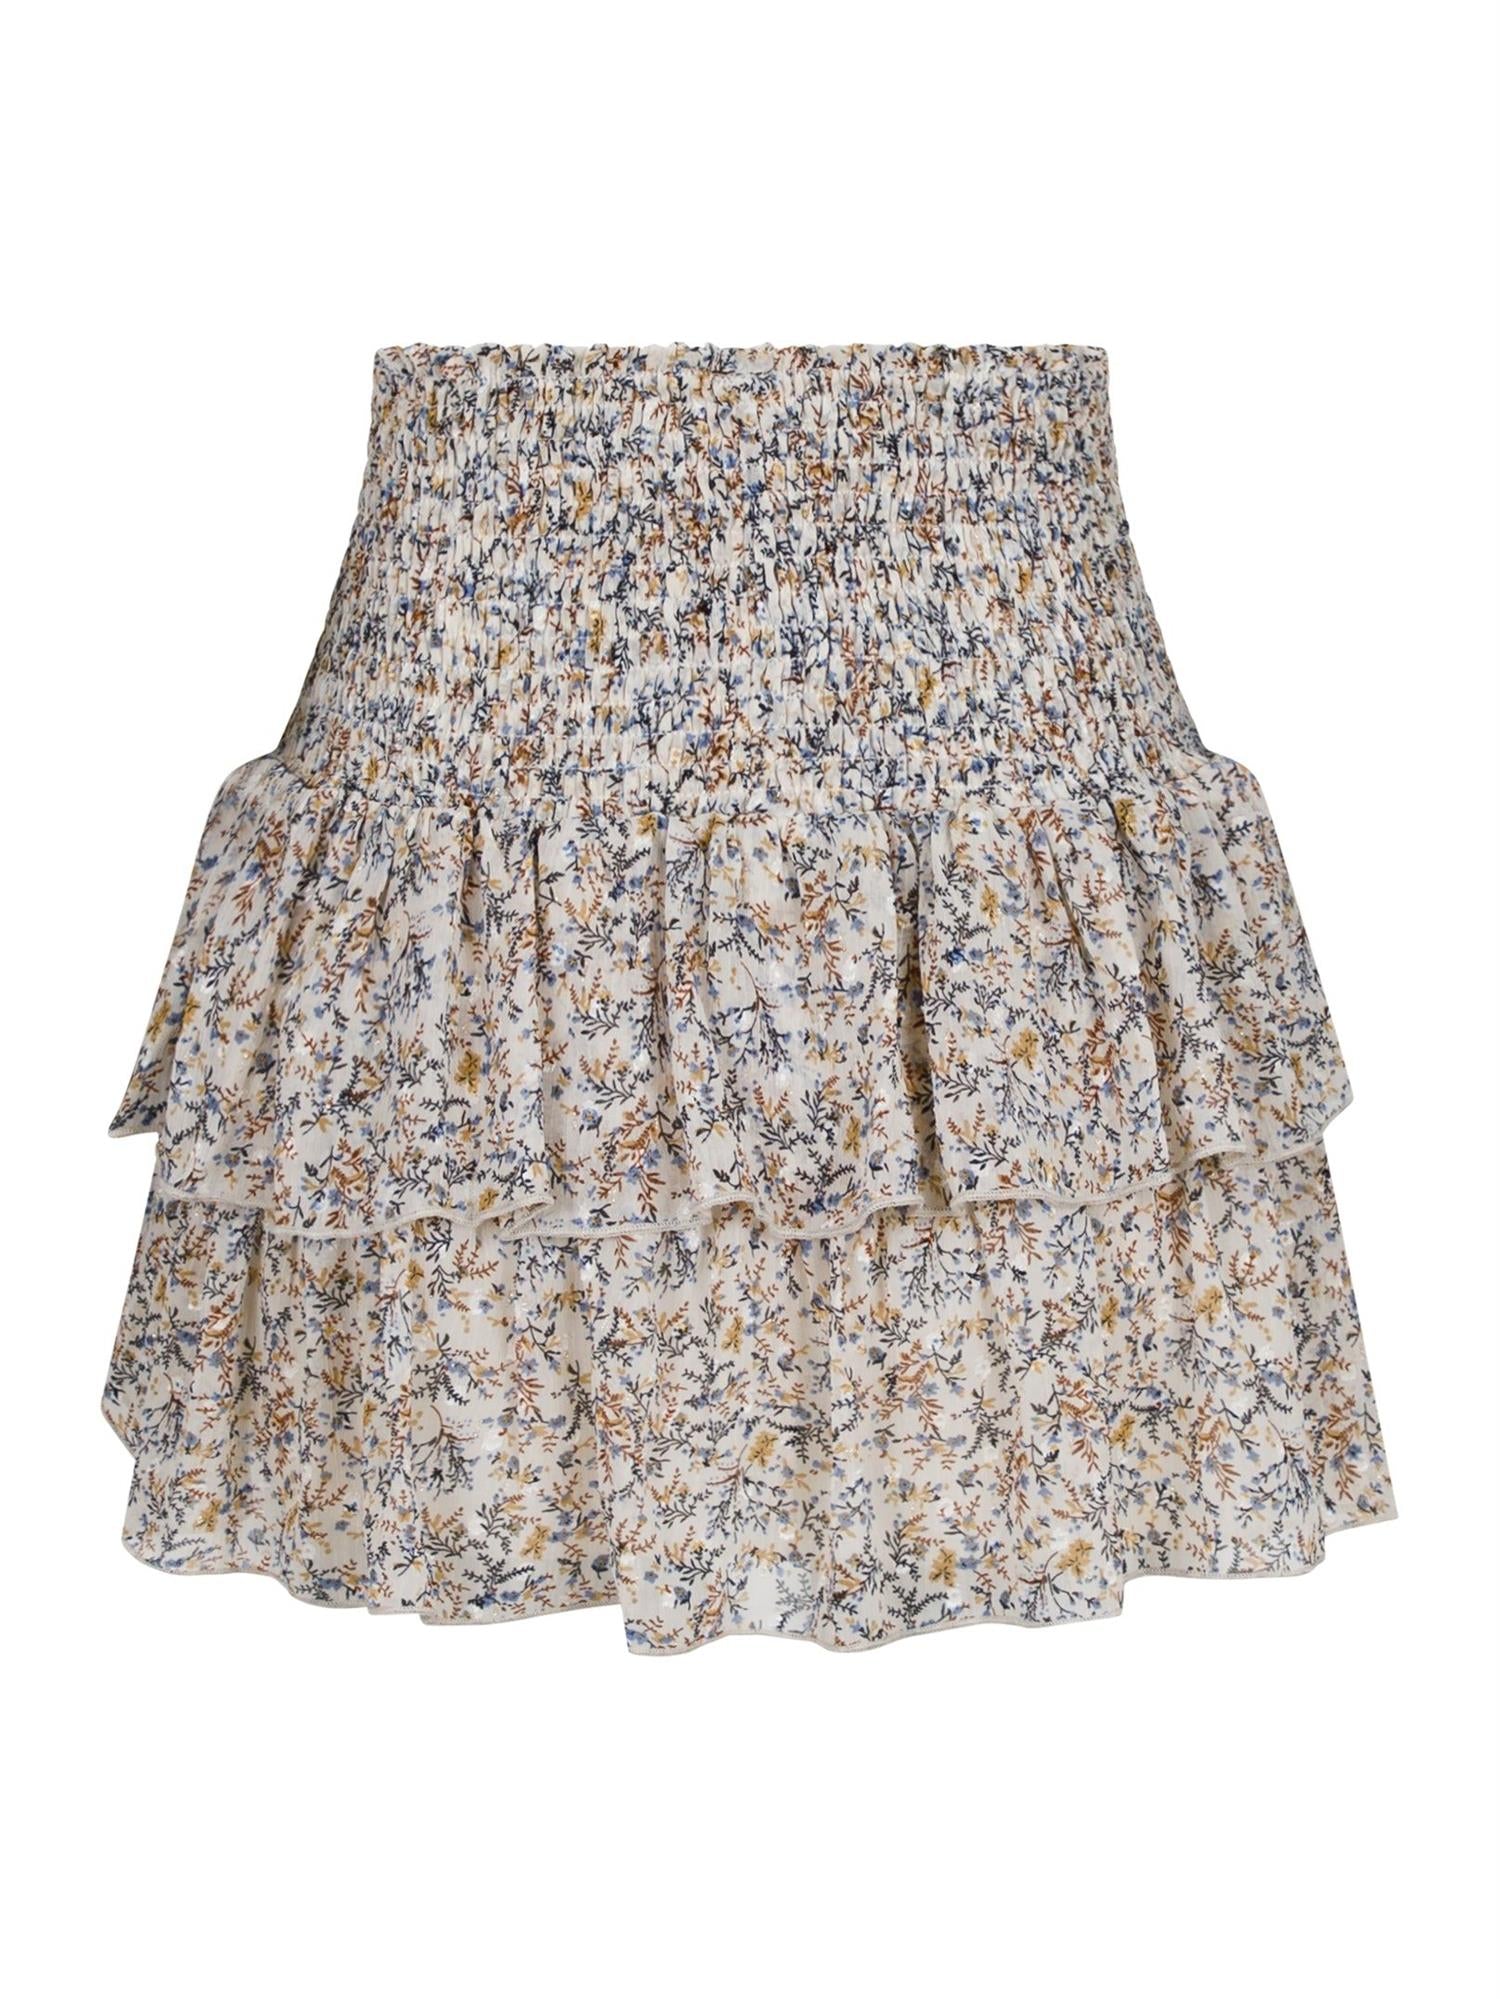 Carin Bohemian Skirt